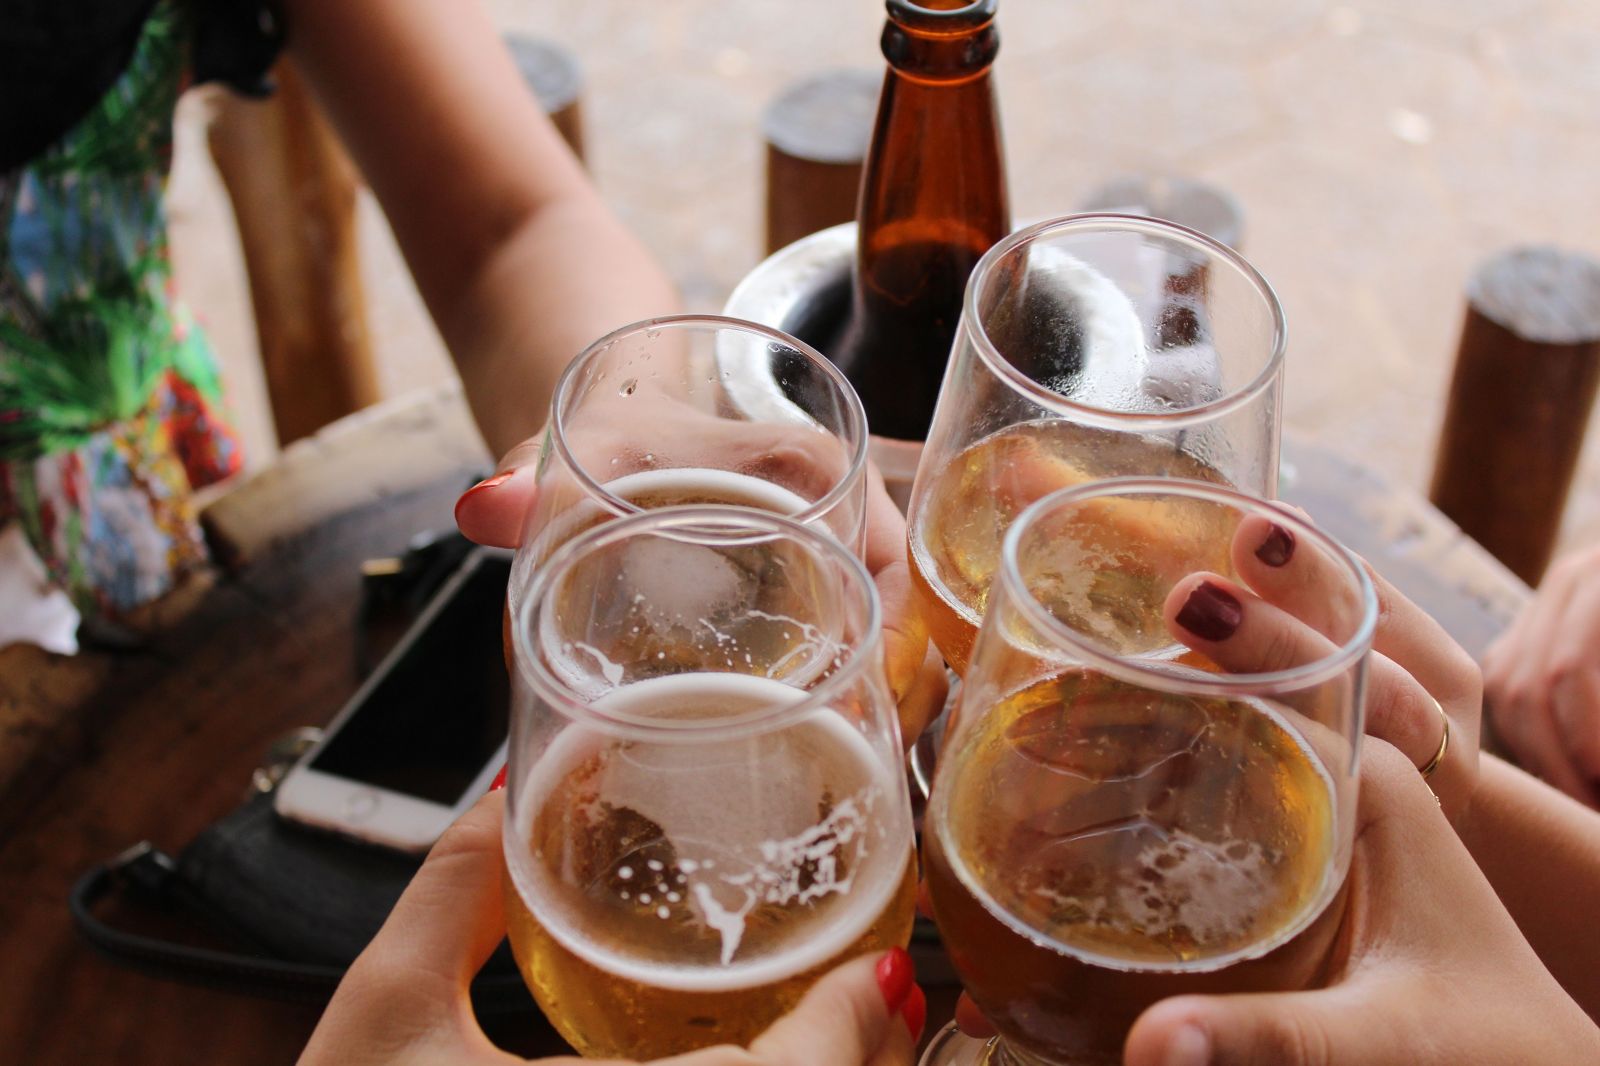 Slováci sa opíjajú častejšie než raz za 2 týždňe. Svetový rebríček opitosti odhalil krajiny s najväčšou láskou k alkoholu